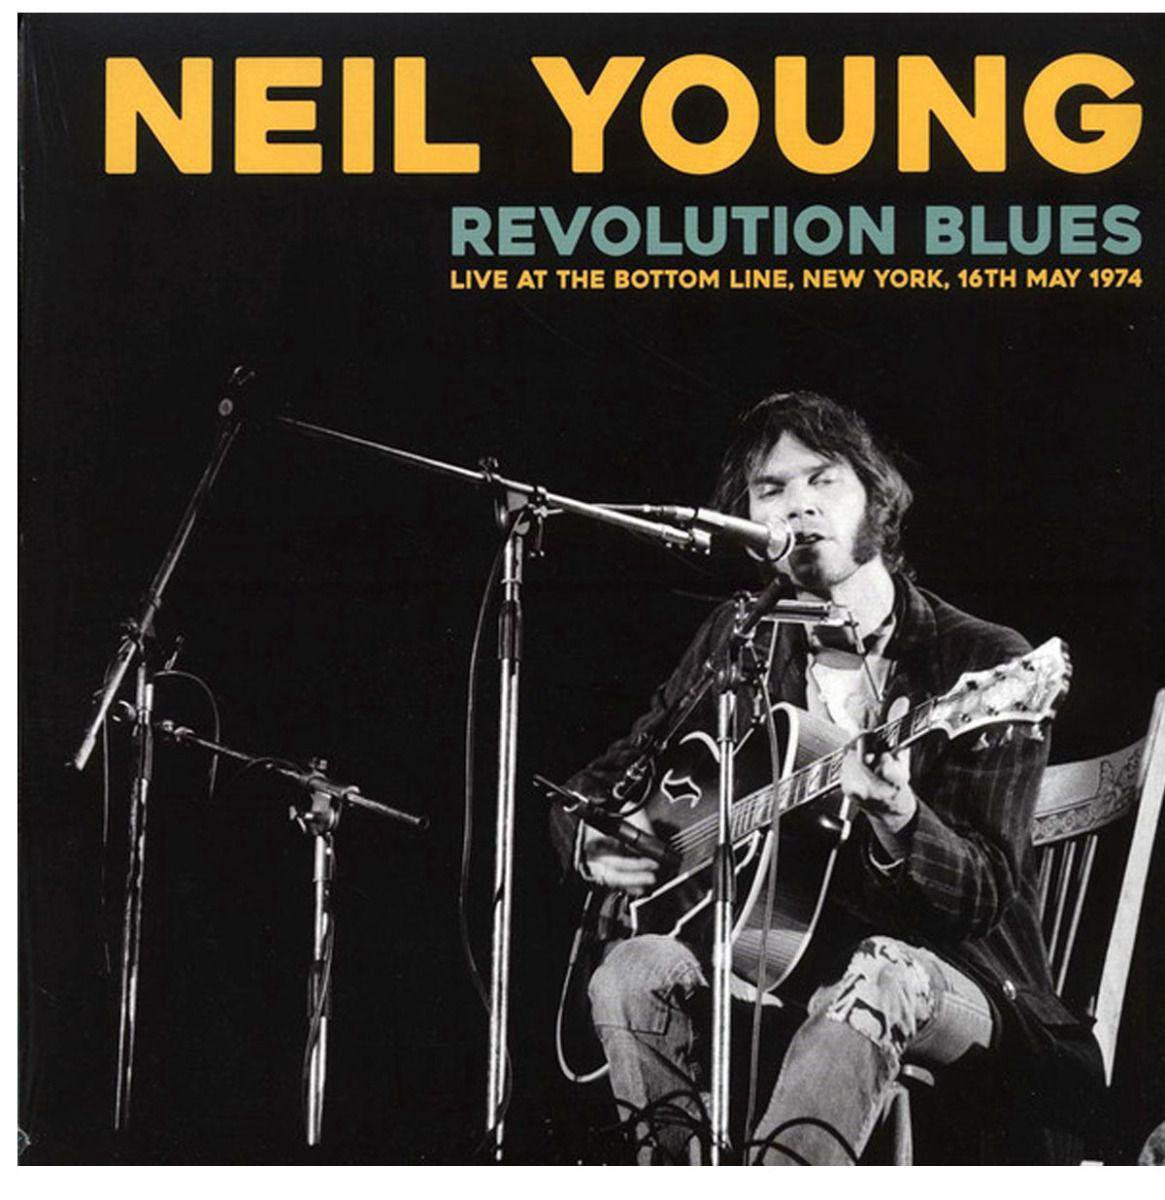  |  Vinyl LP | Neil Young - Citizen Kane Jr. Blues (Live At the Bottom Line) (LP) | Records on Vinyl